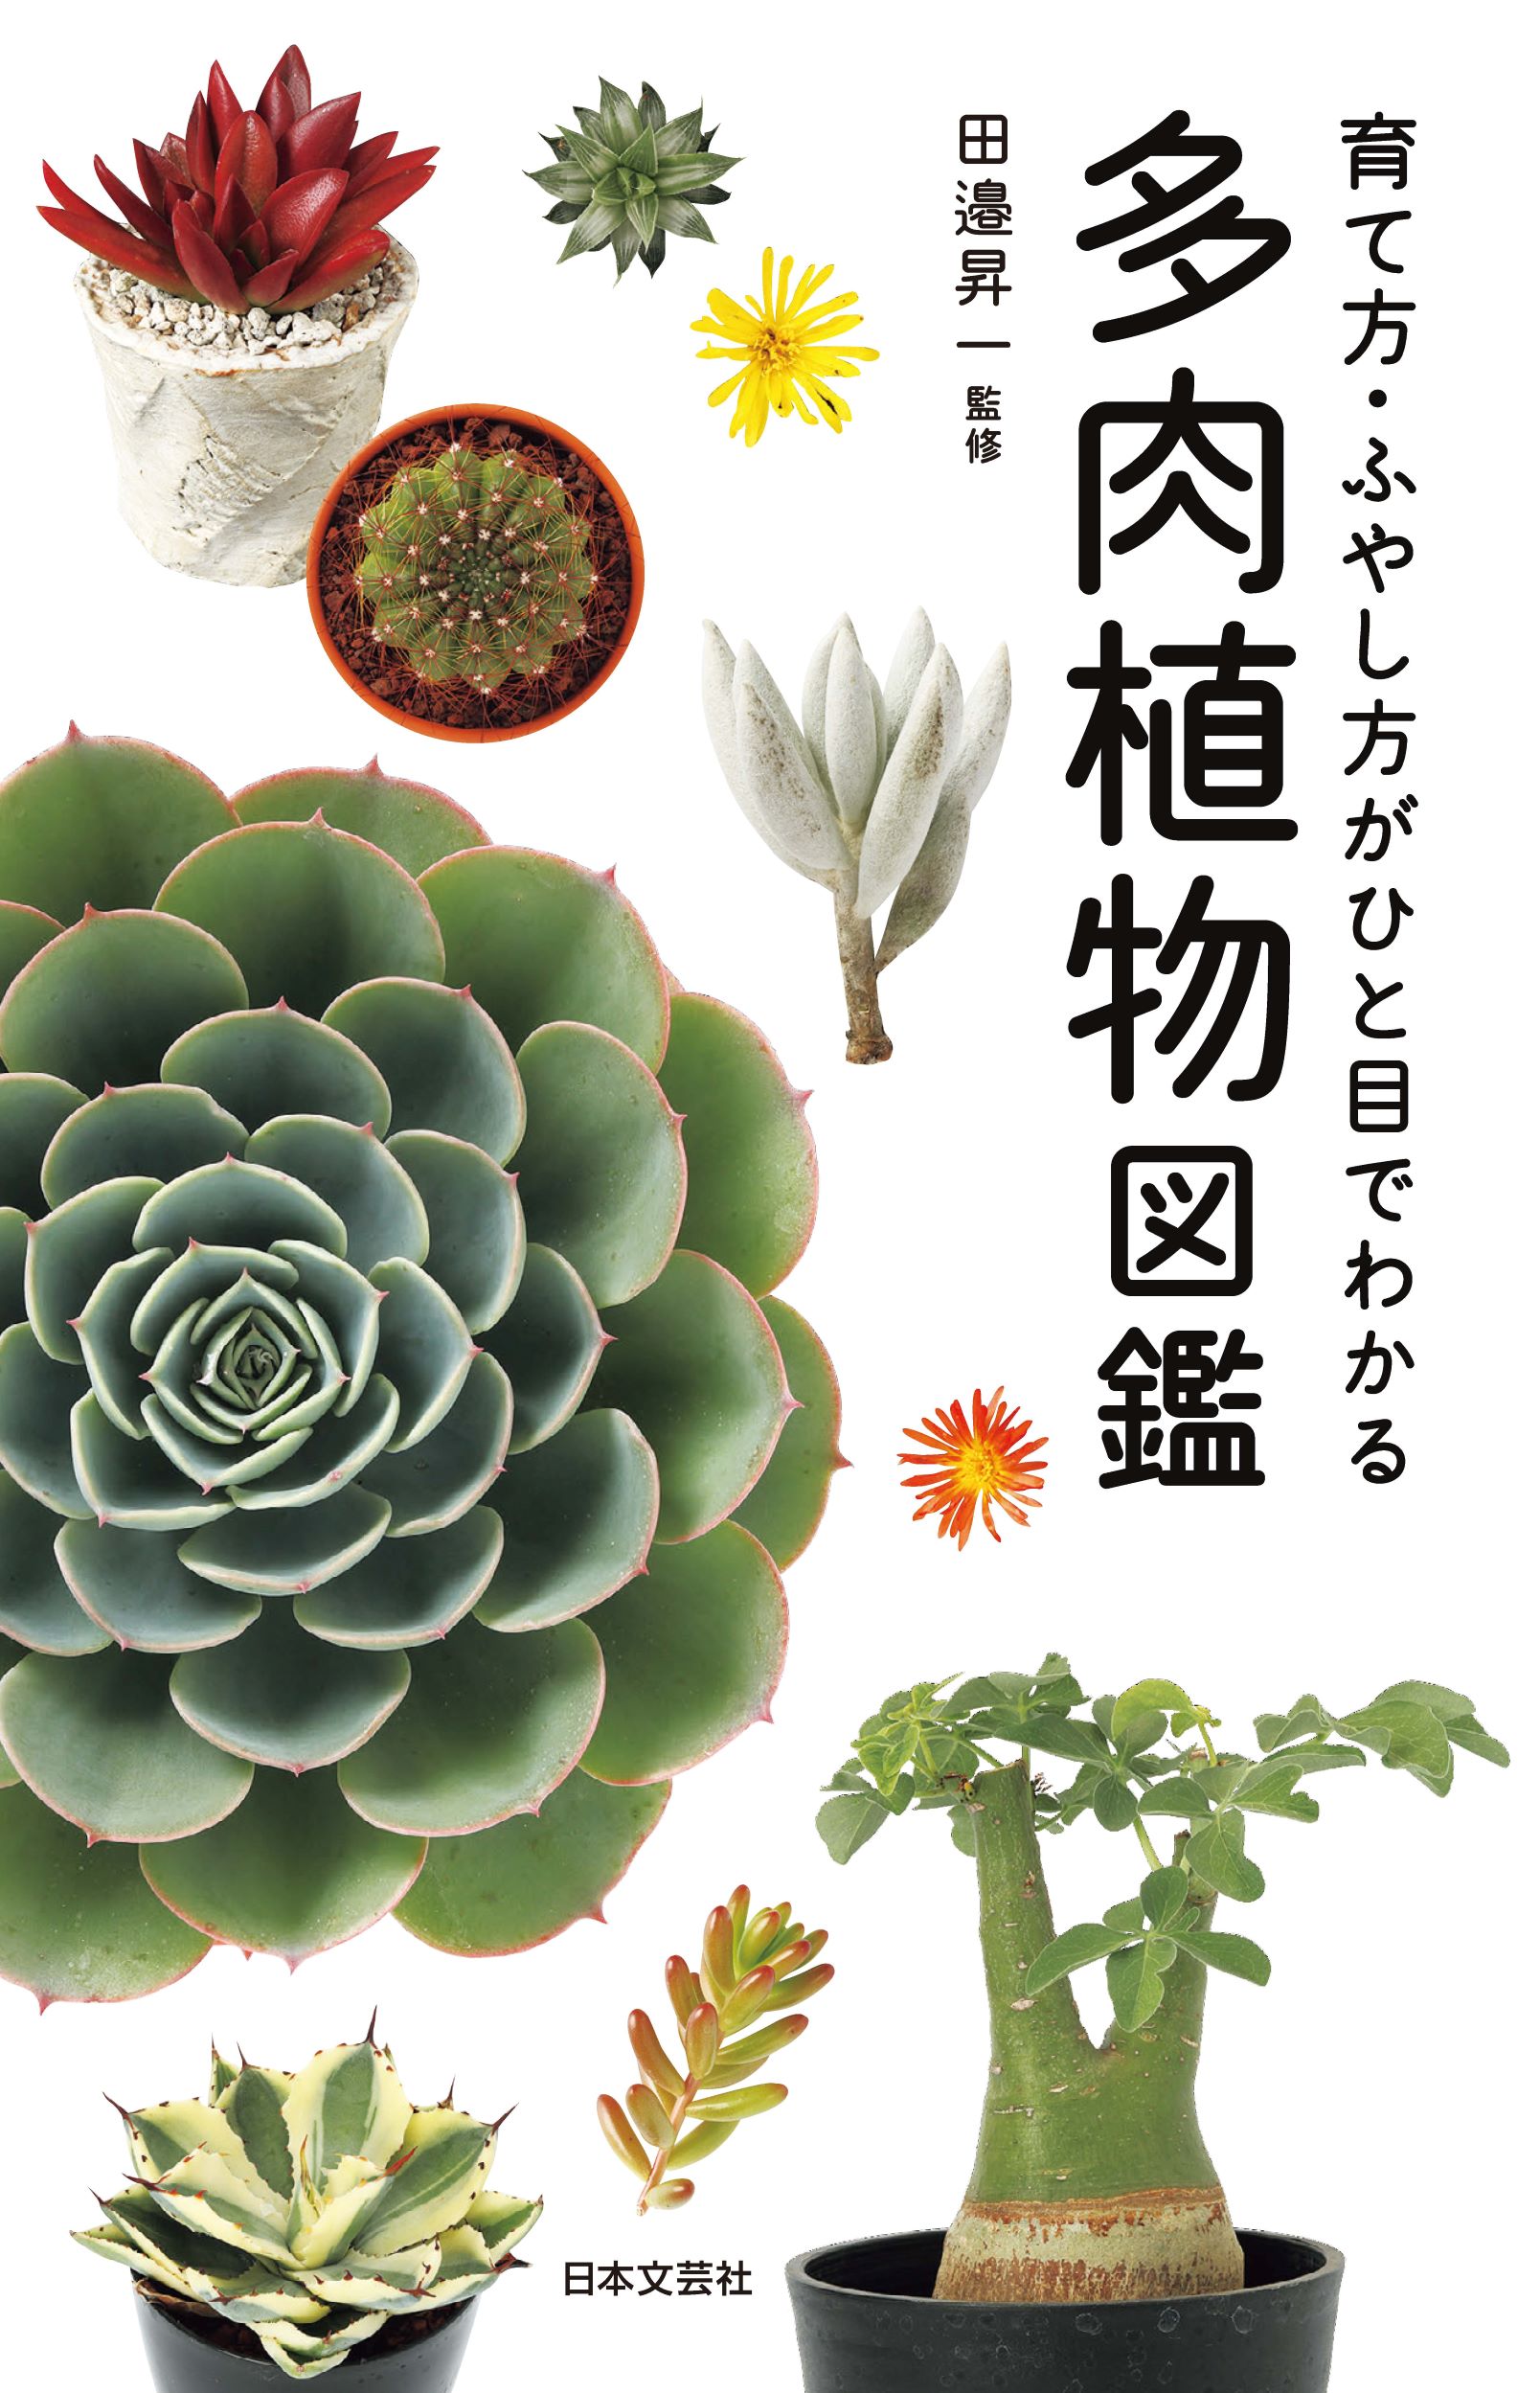 国内で入手可能な多肉植物997種類を網羅 育て方 ふやし方がひと目でわかる 多肉植物図鑑 2 15発売 株式会社日本文芸社のプレスリリース